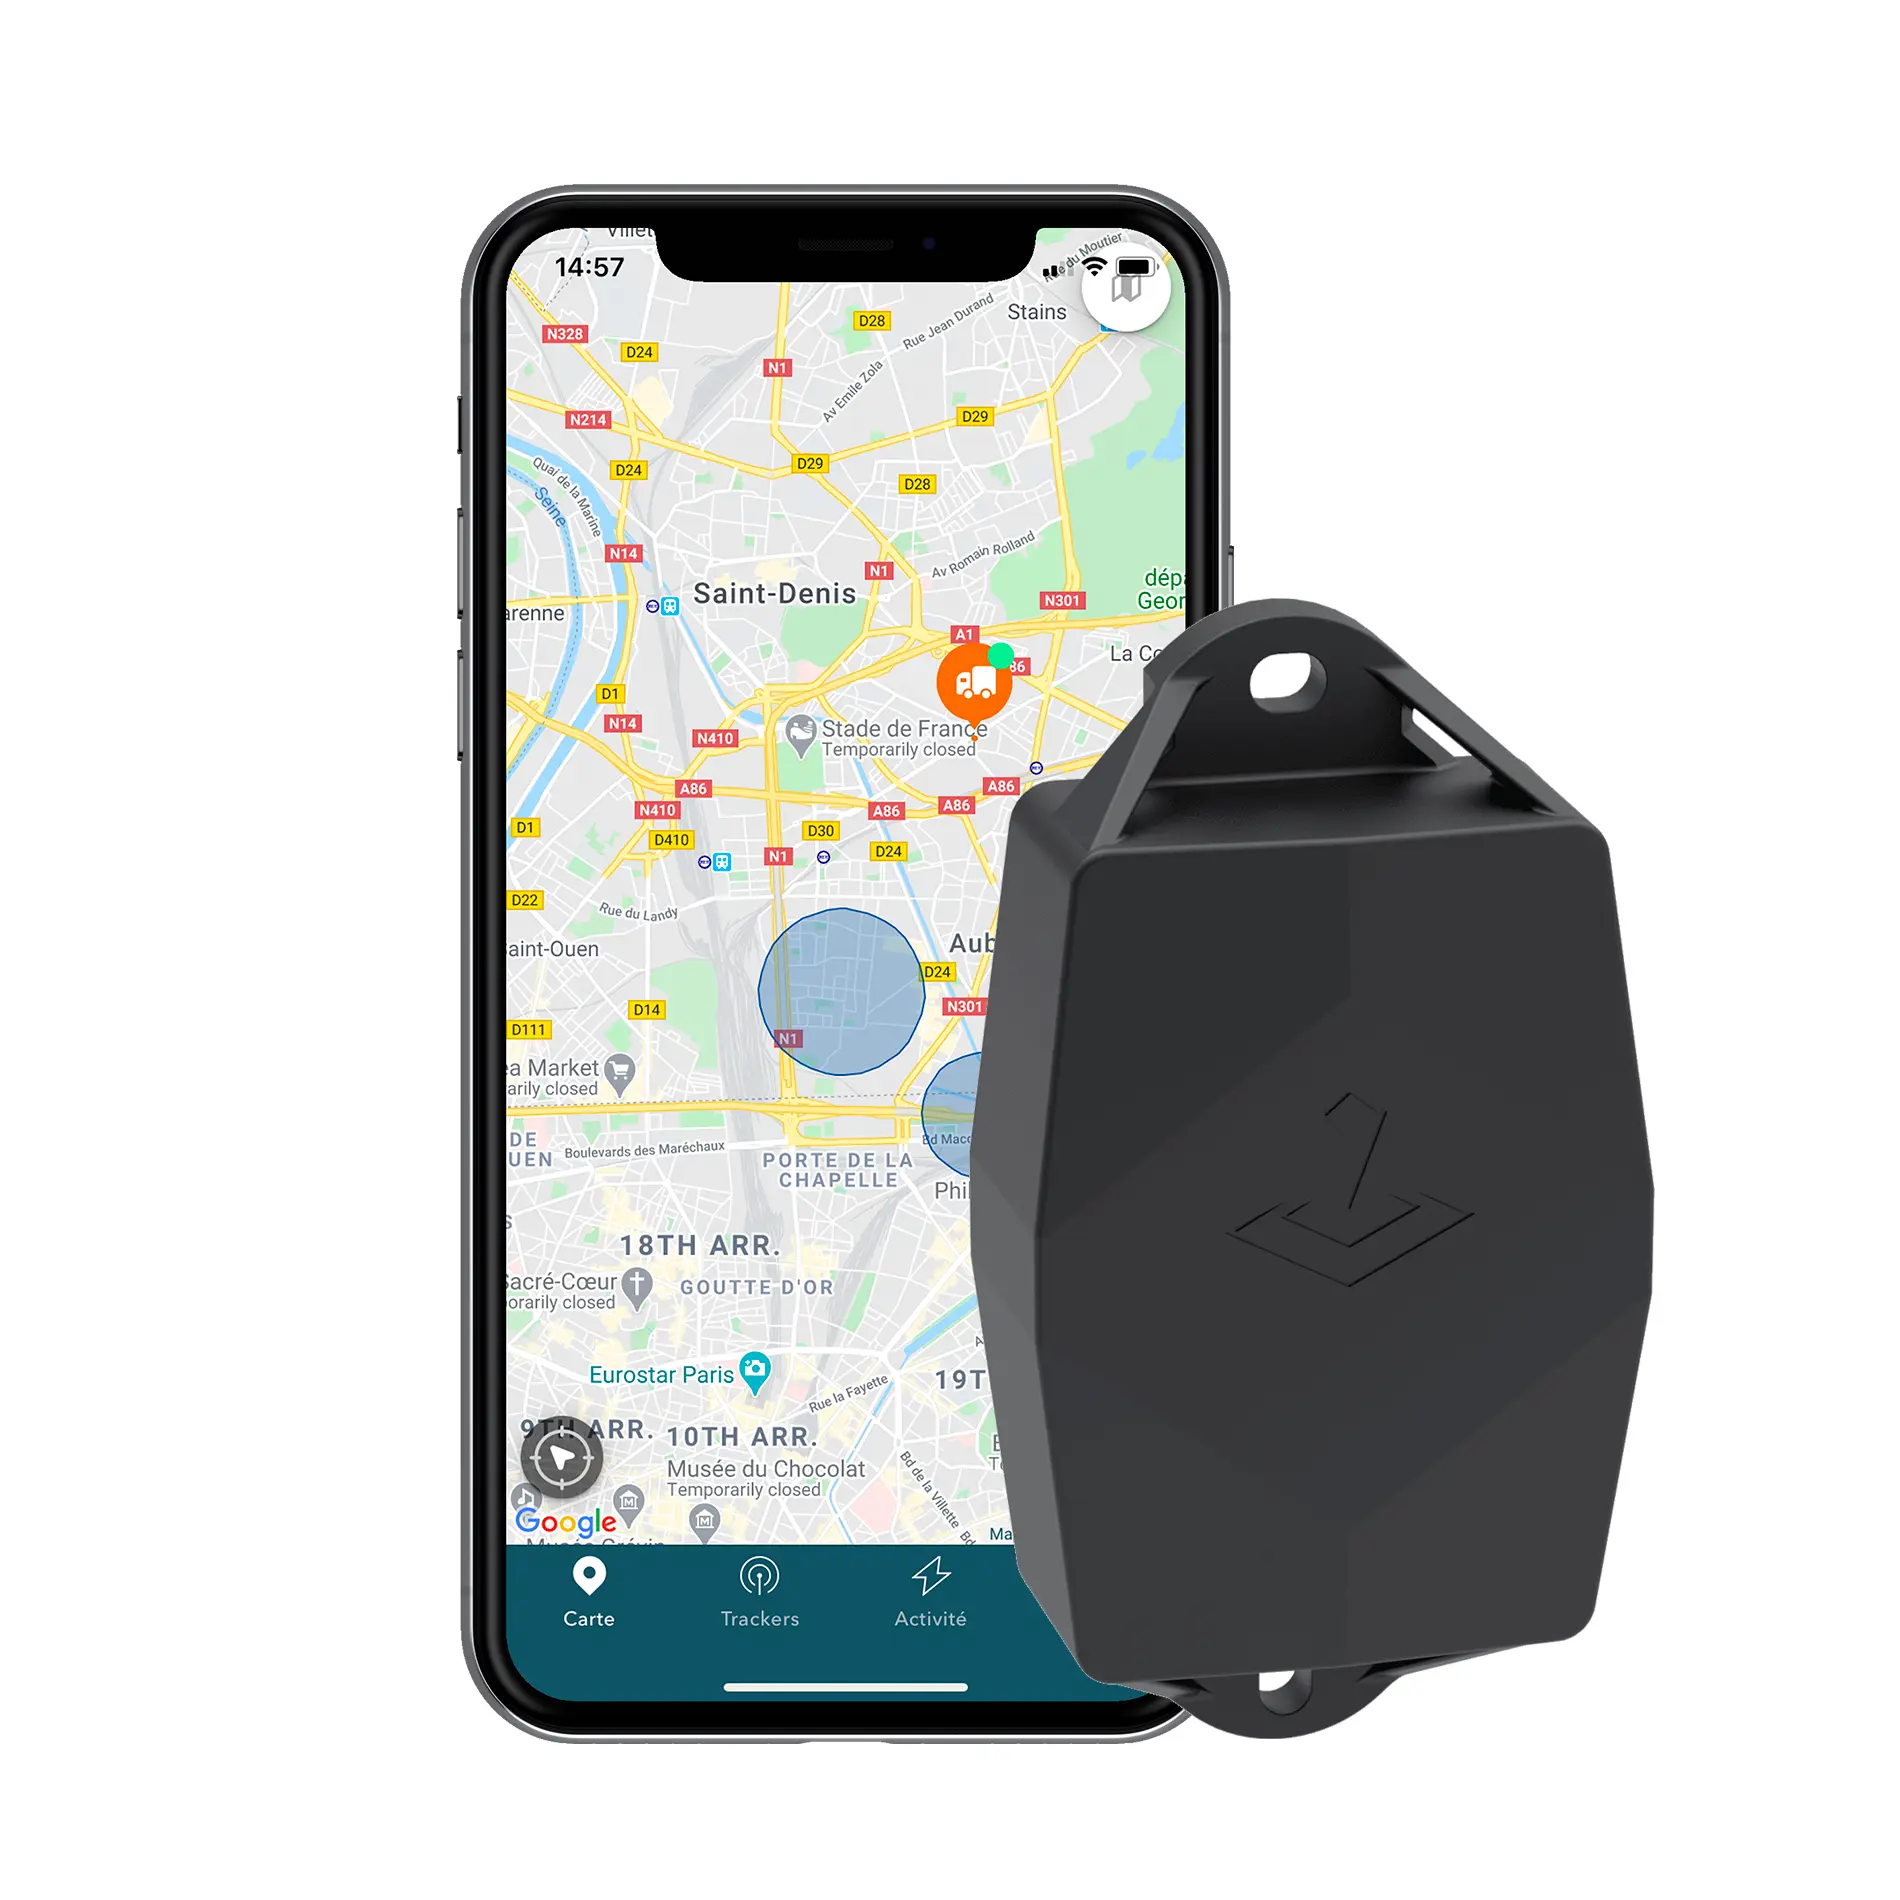 Traceur GPS Maxi (batteries et abonnement 1 an inclus) - TRAKmy